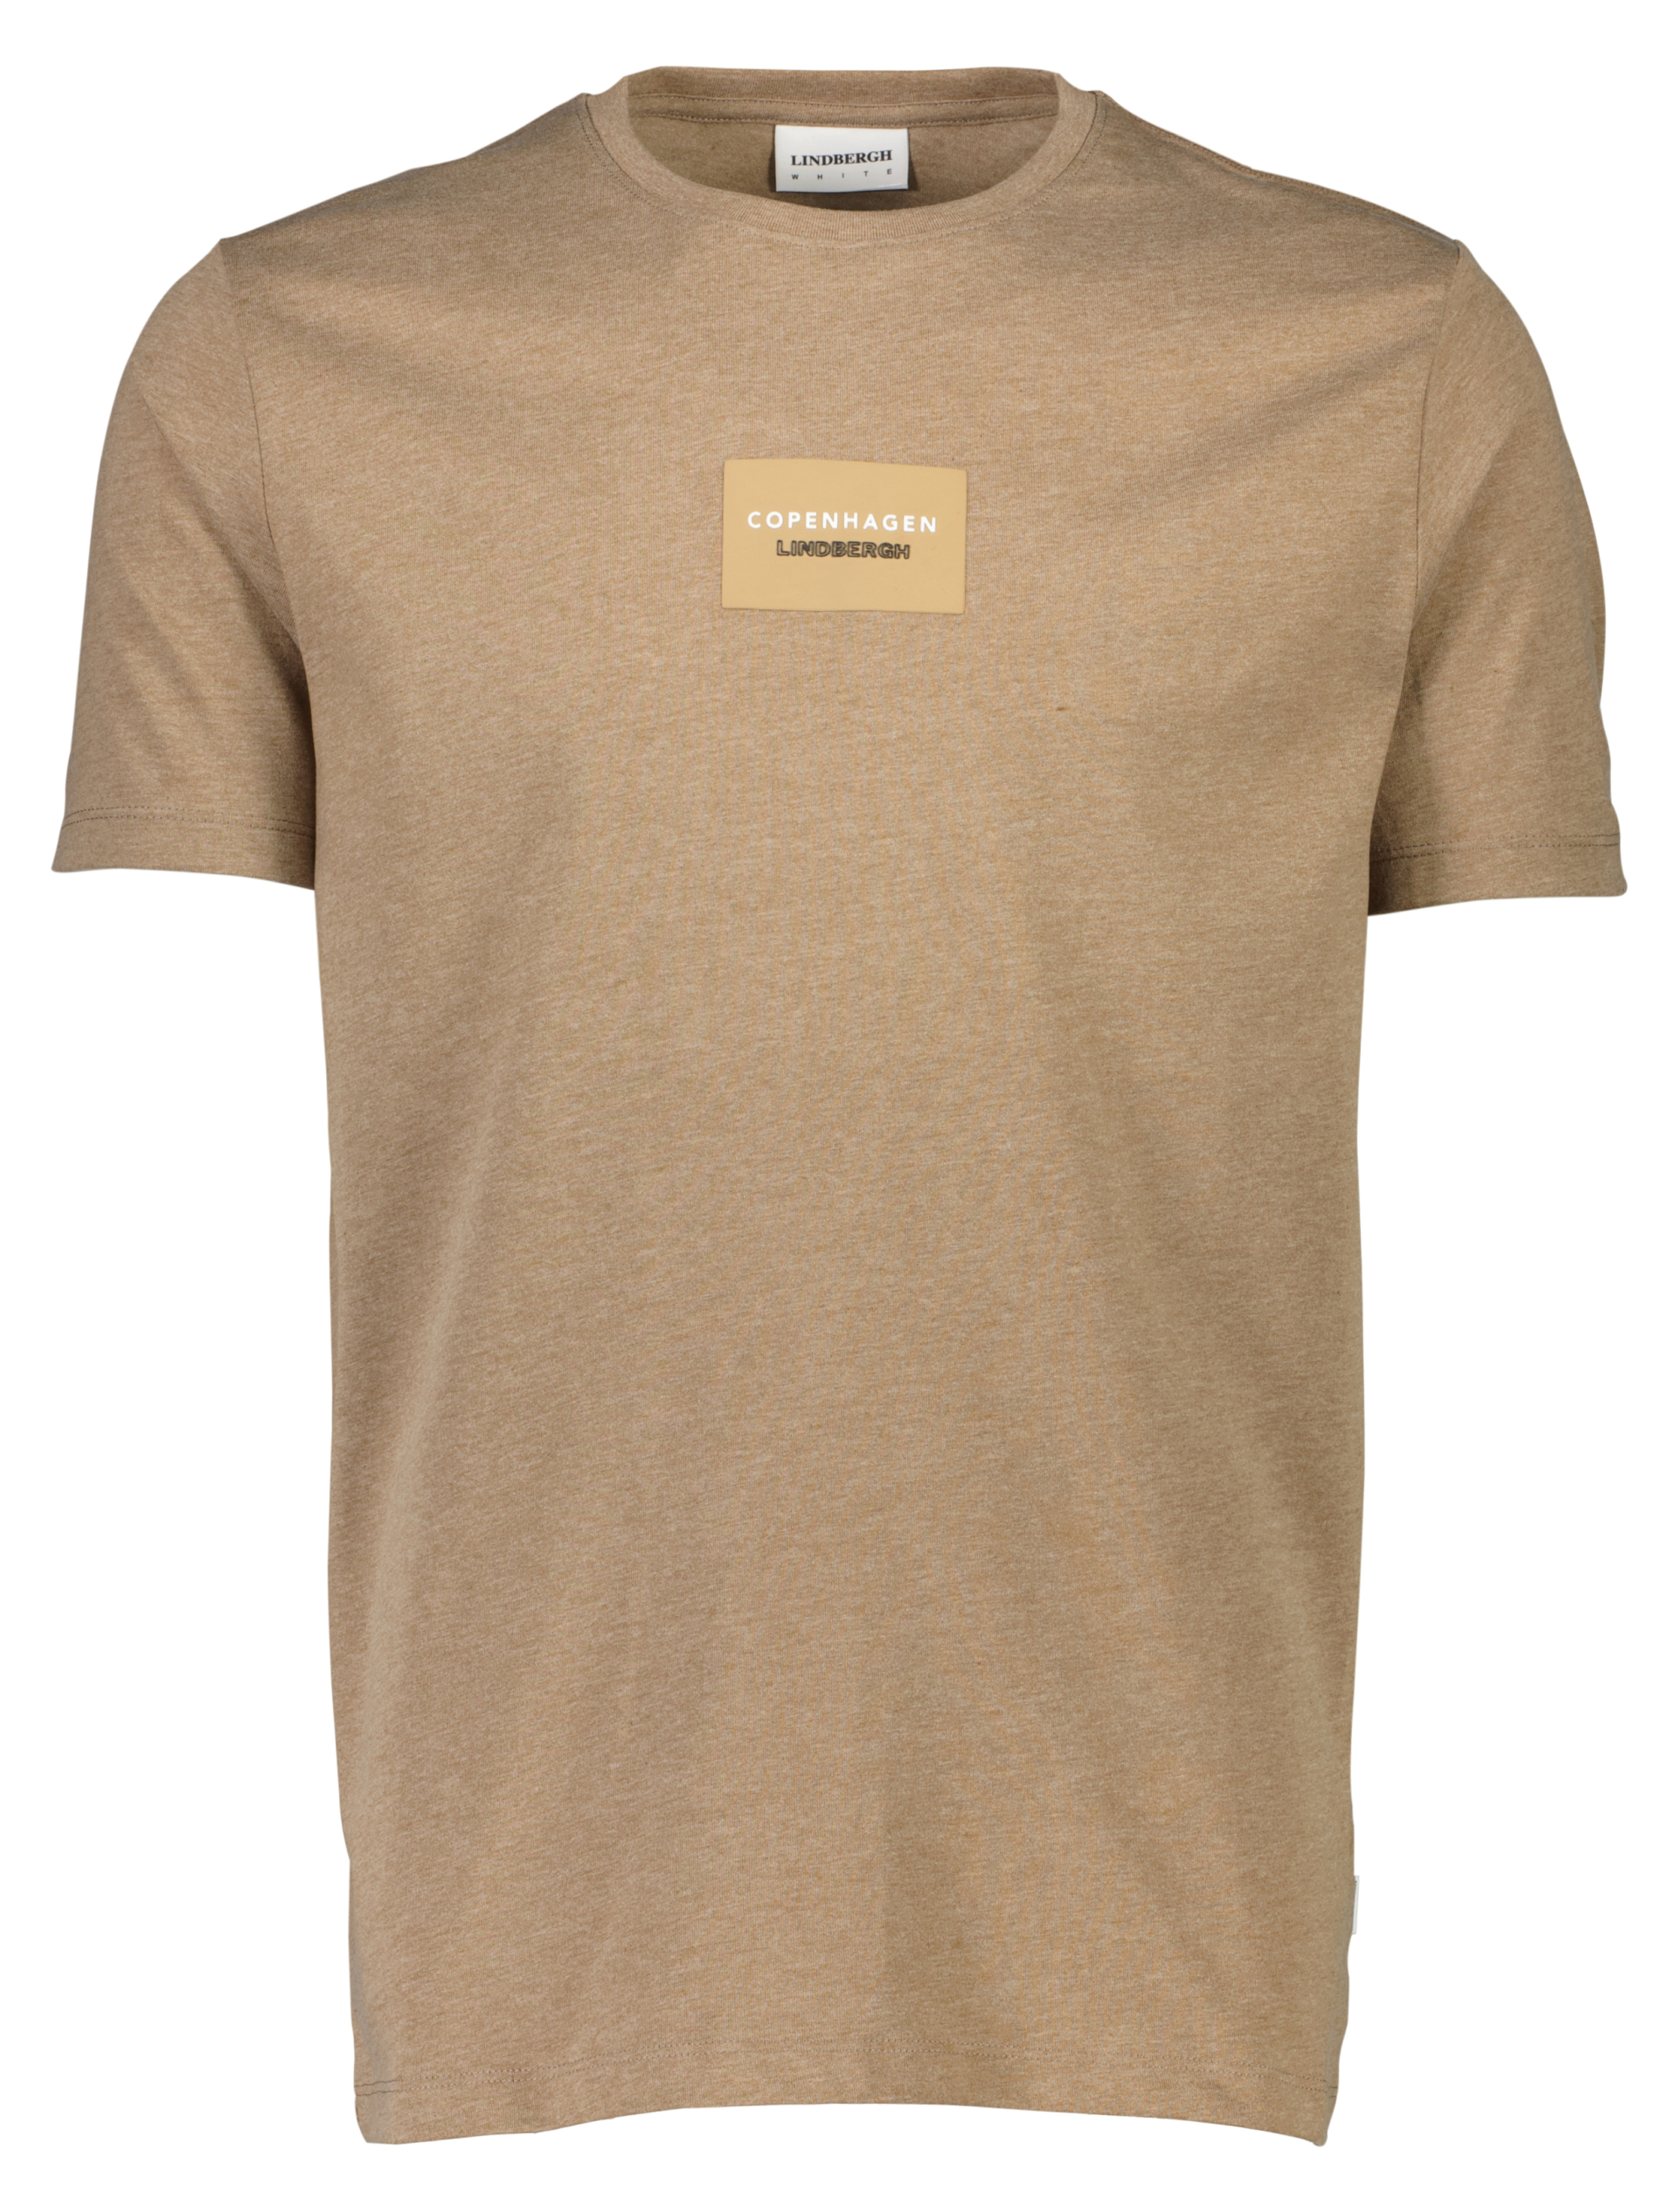 Lindbergh T-shirt sand / sand mel